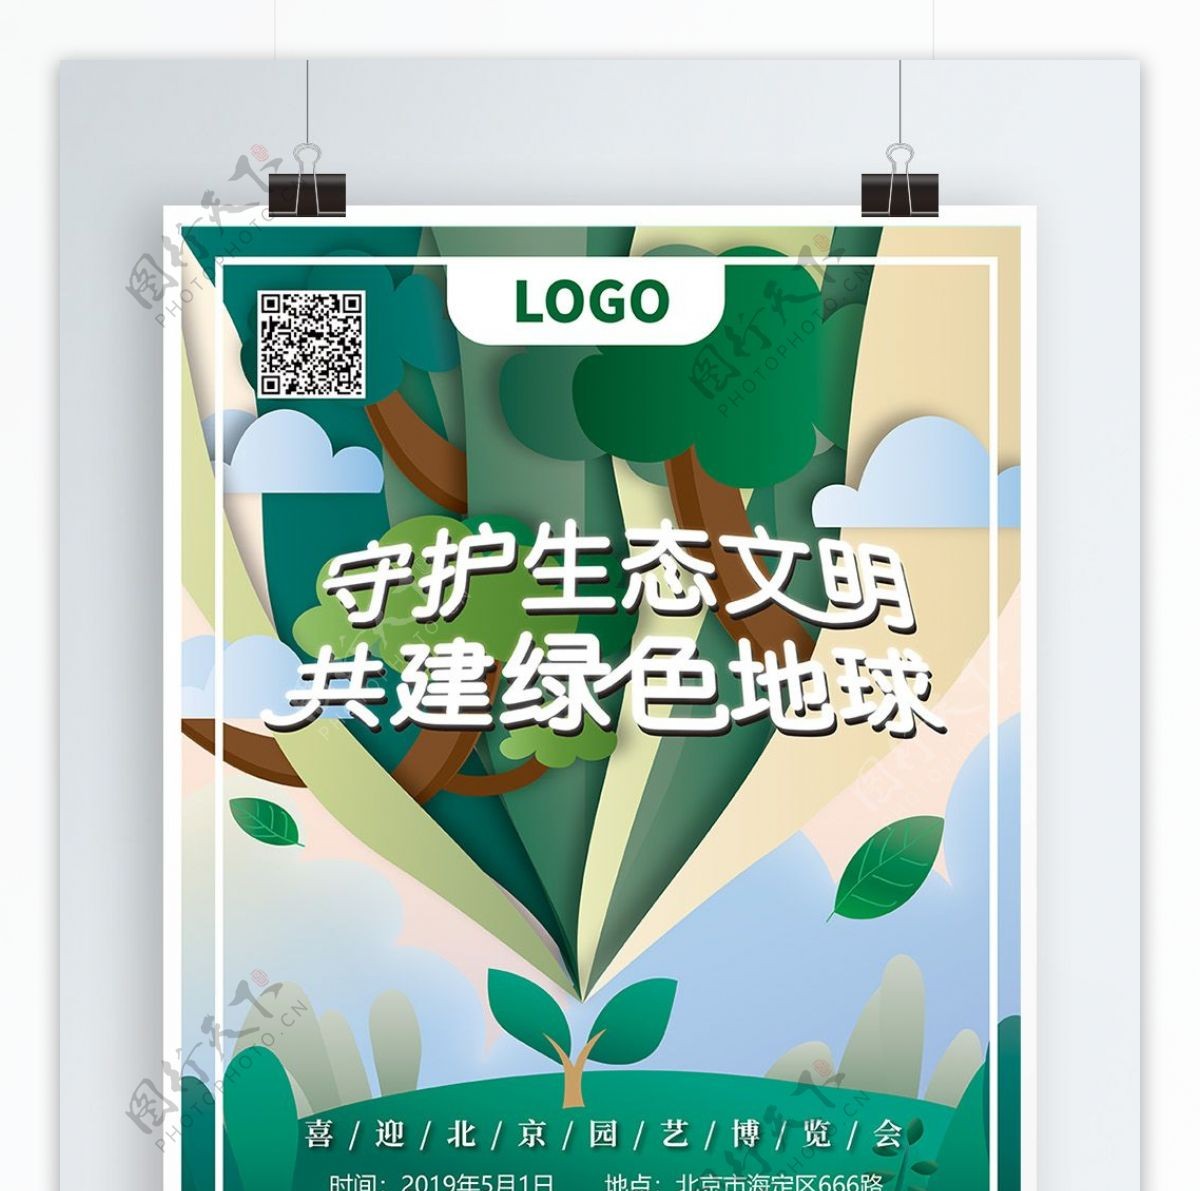 原创设计绿色树苗世博会公益海报